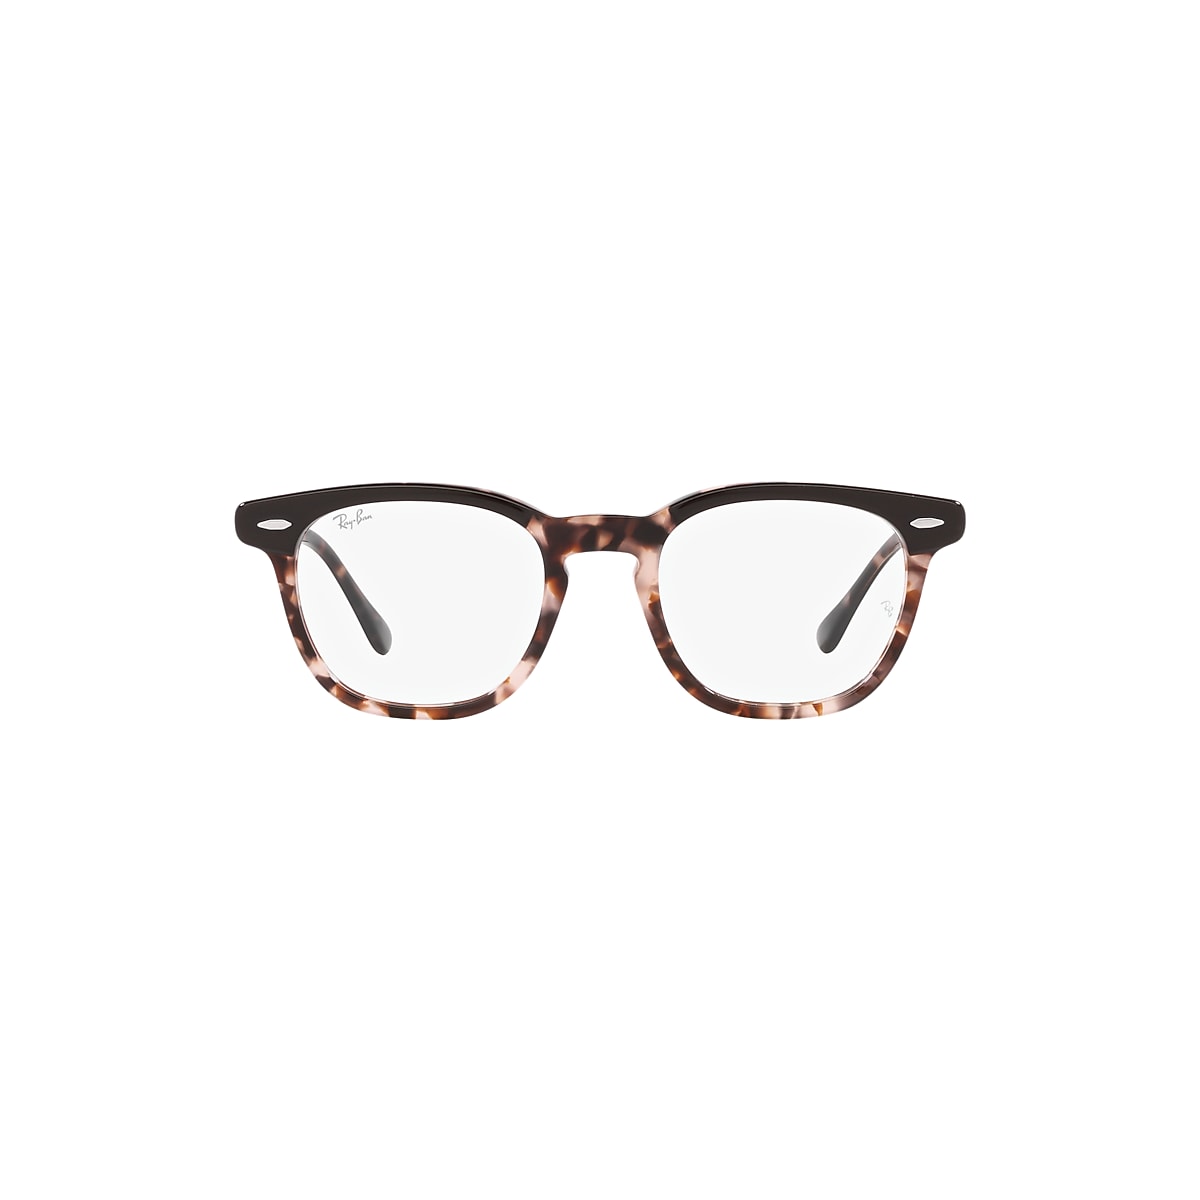 HAWKEYE OPTICS Eyeglasses with Brown On Pink Havana Frame